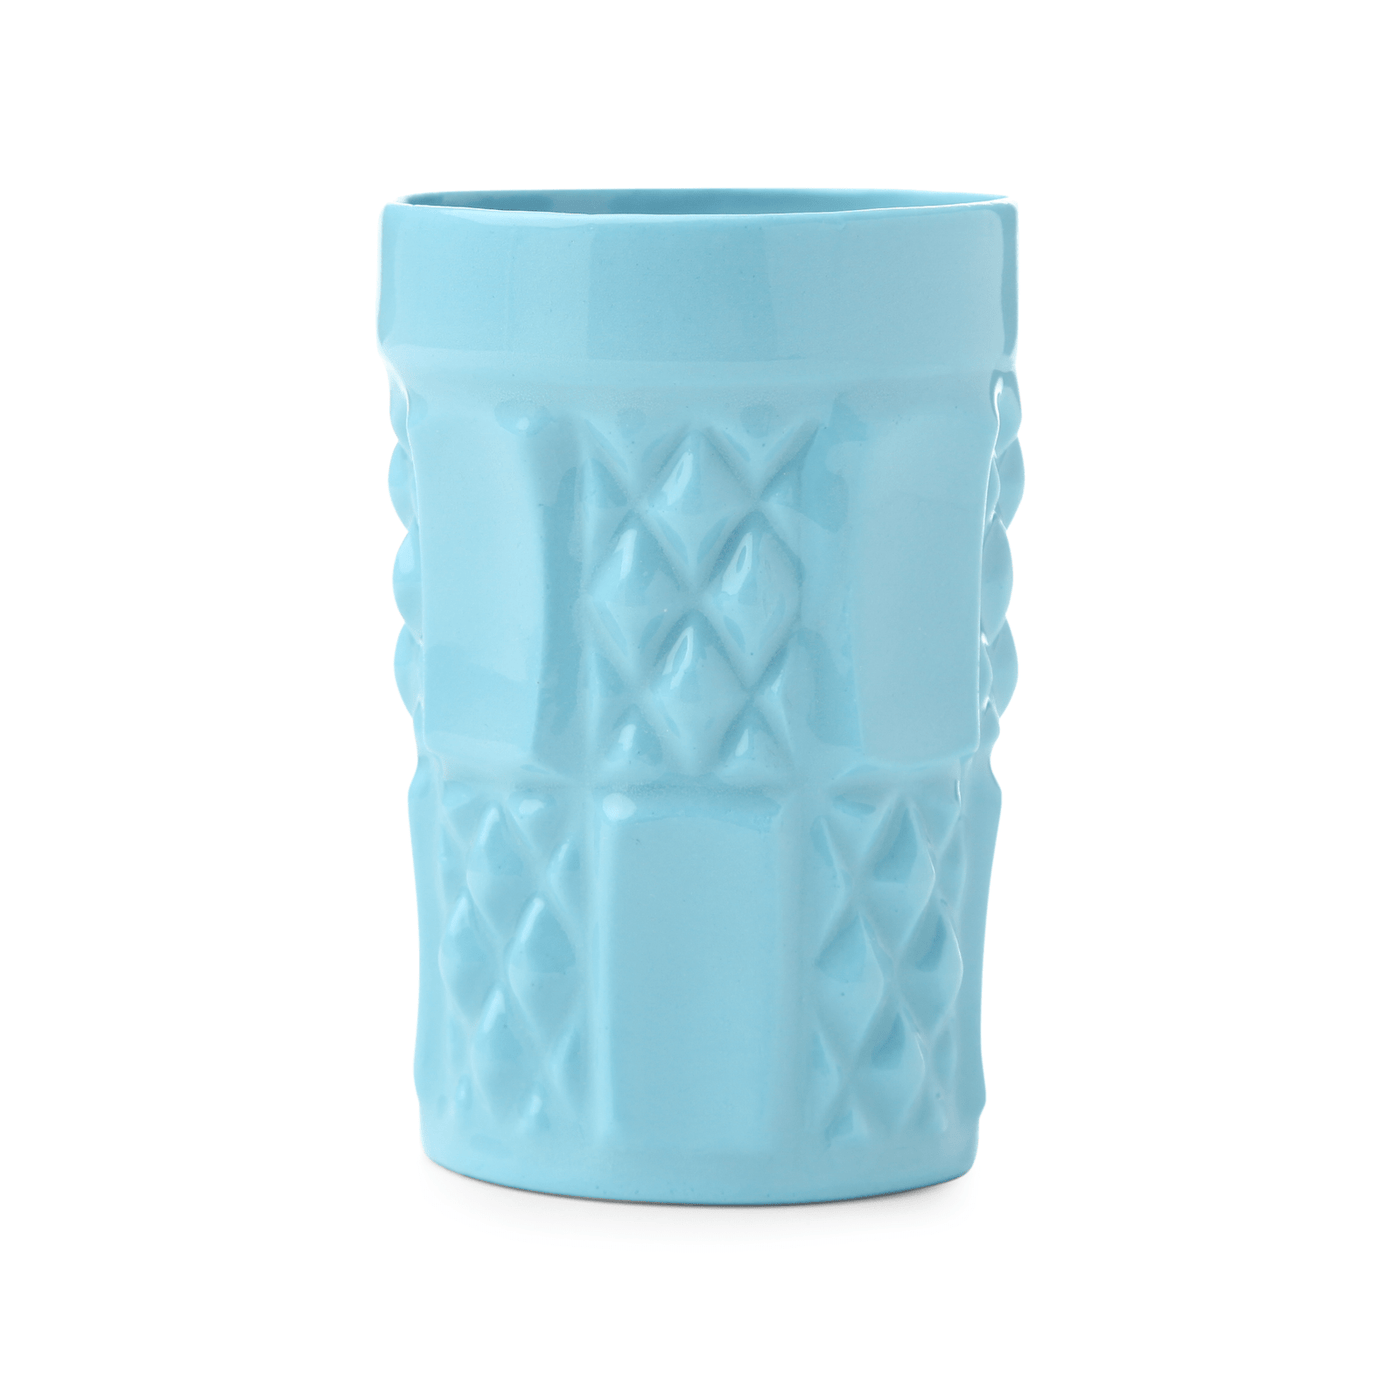 Reva Handmade Mug, Blue, 190 ml 1